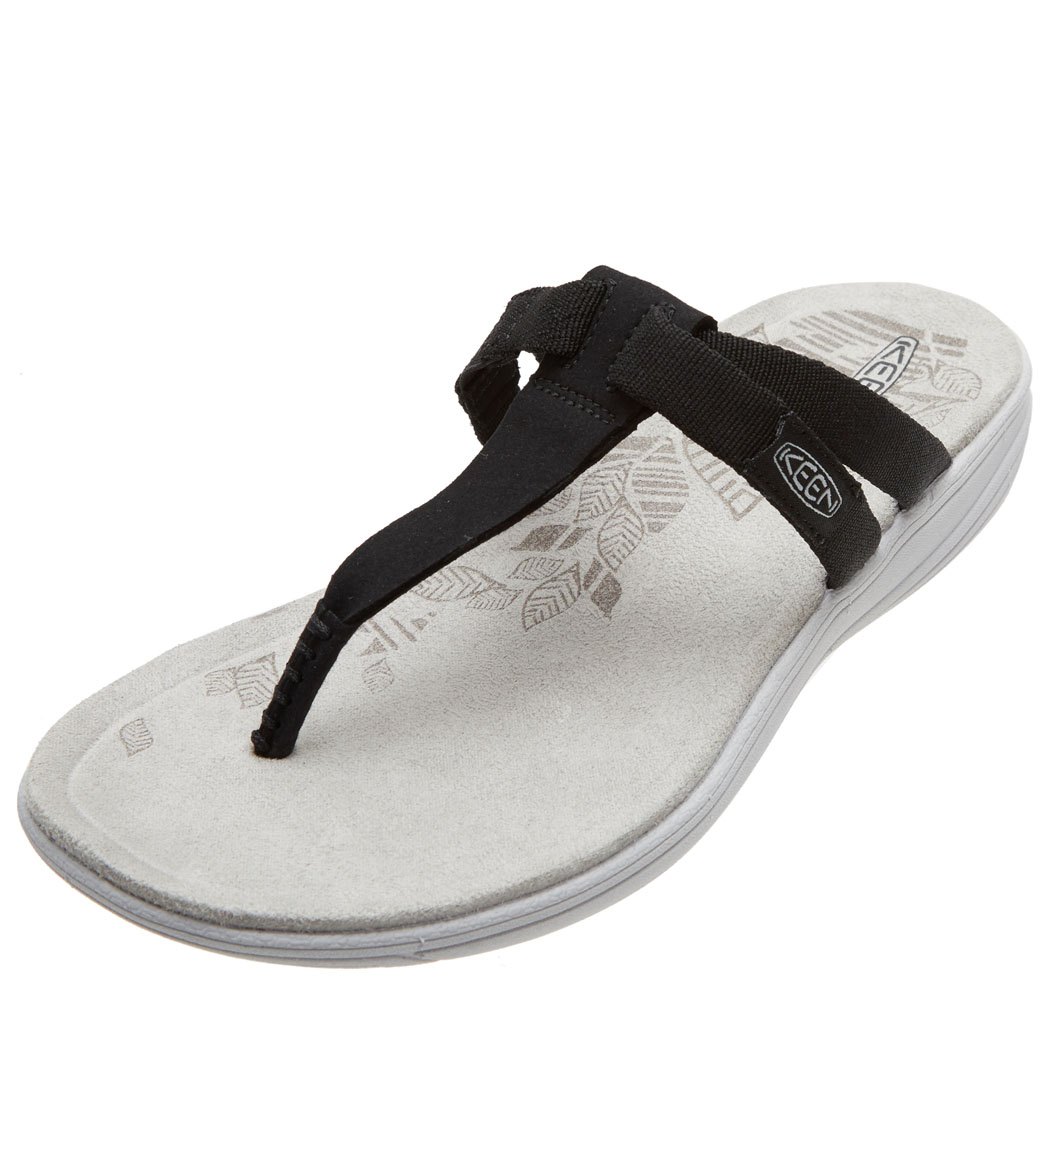 Keen Women's Damaya Flip Flop Sandals - Black/Vapor Blue 6 - Swimoutlet.com